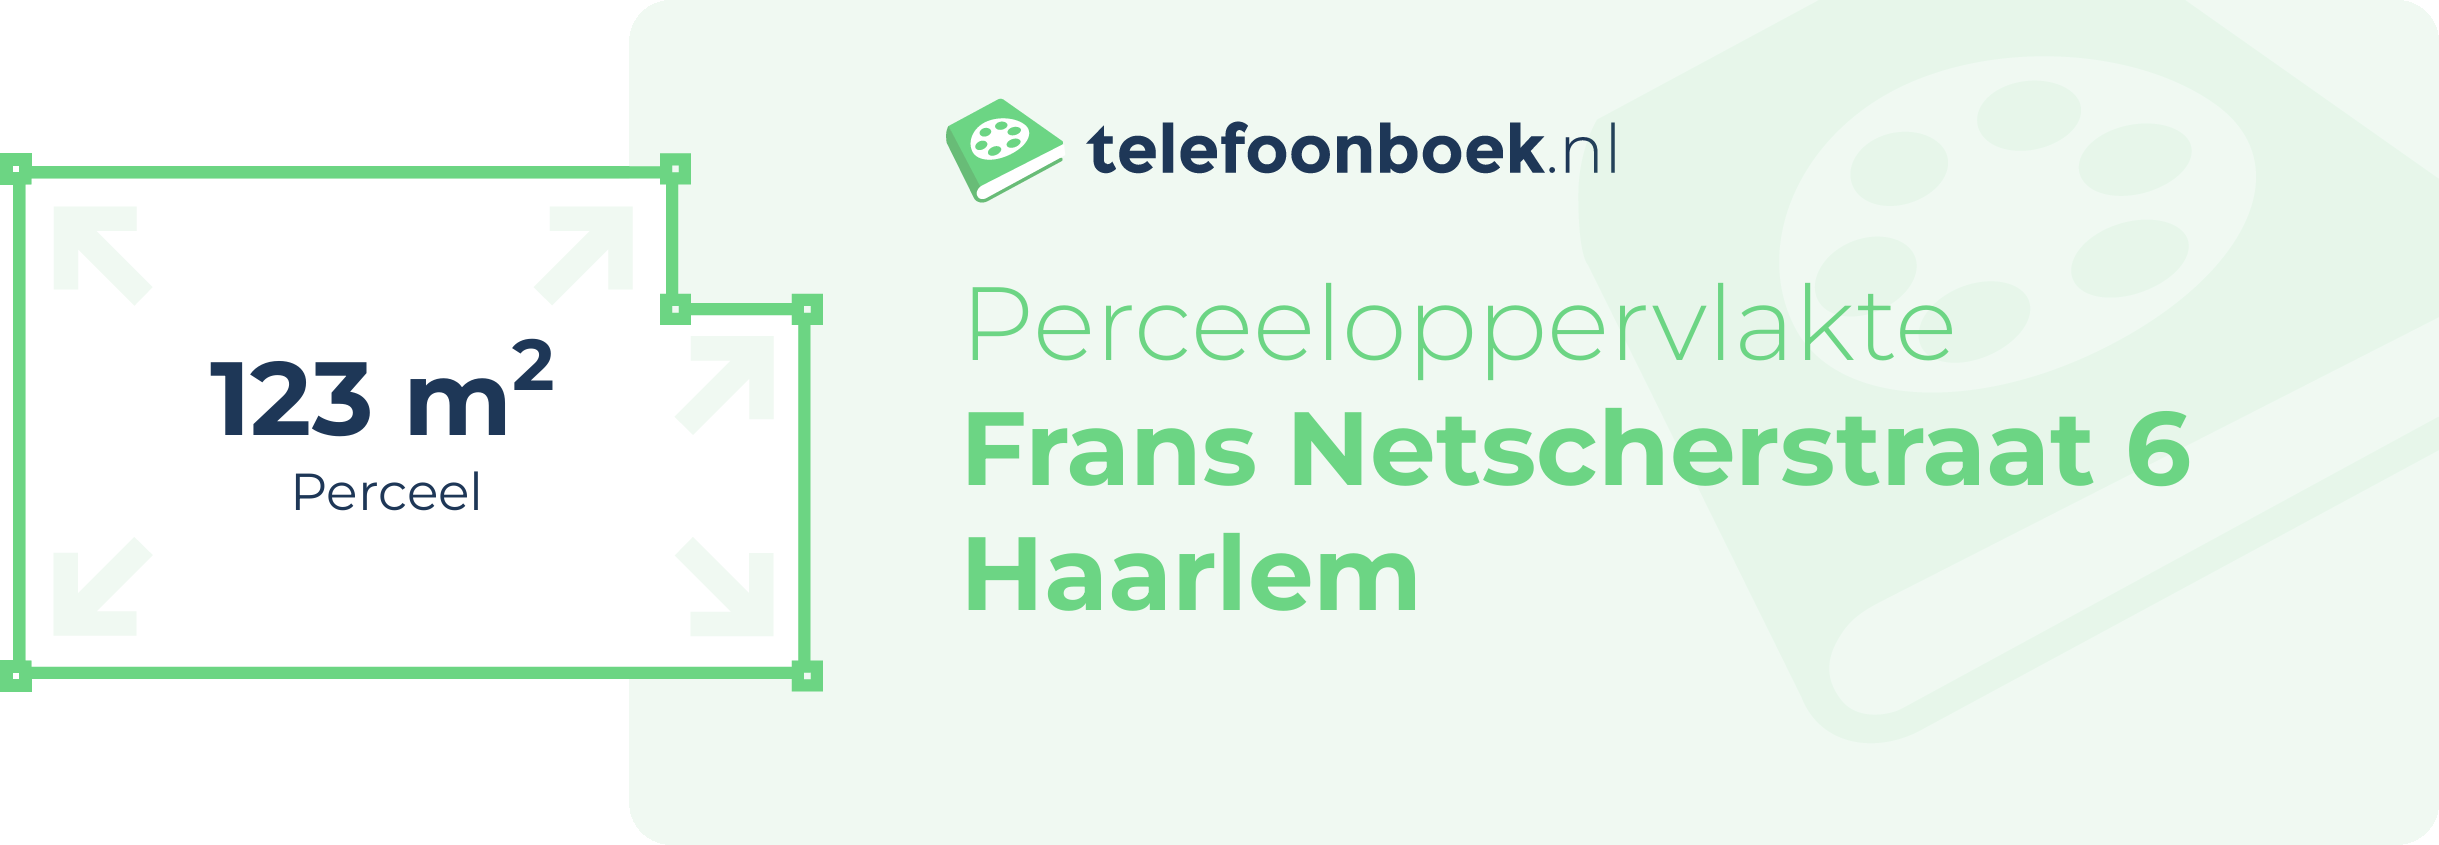 Perceeloppervlakte Frans Netscherstraat 6 Haarlem